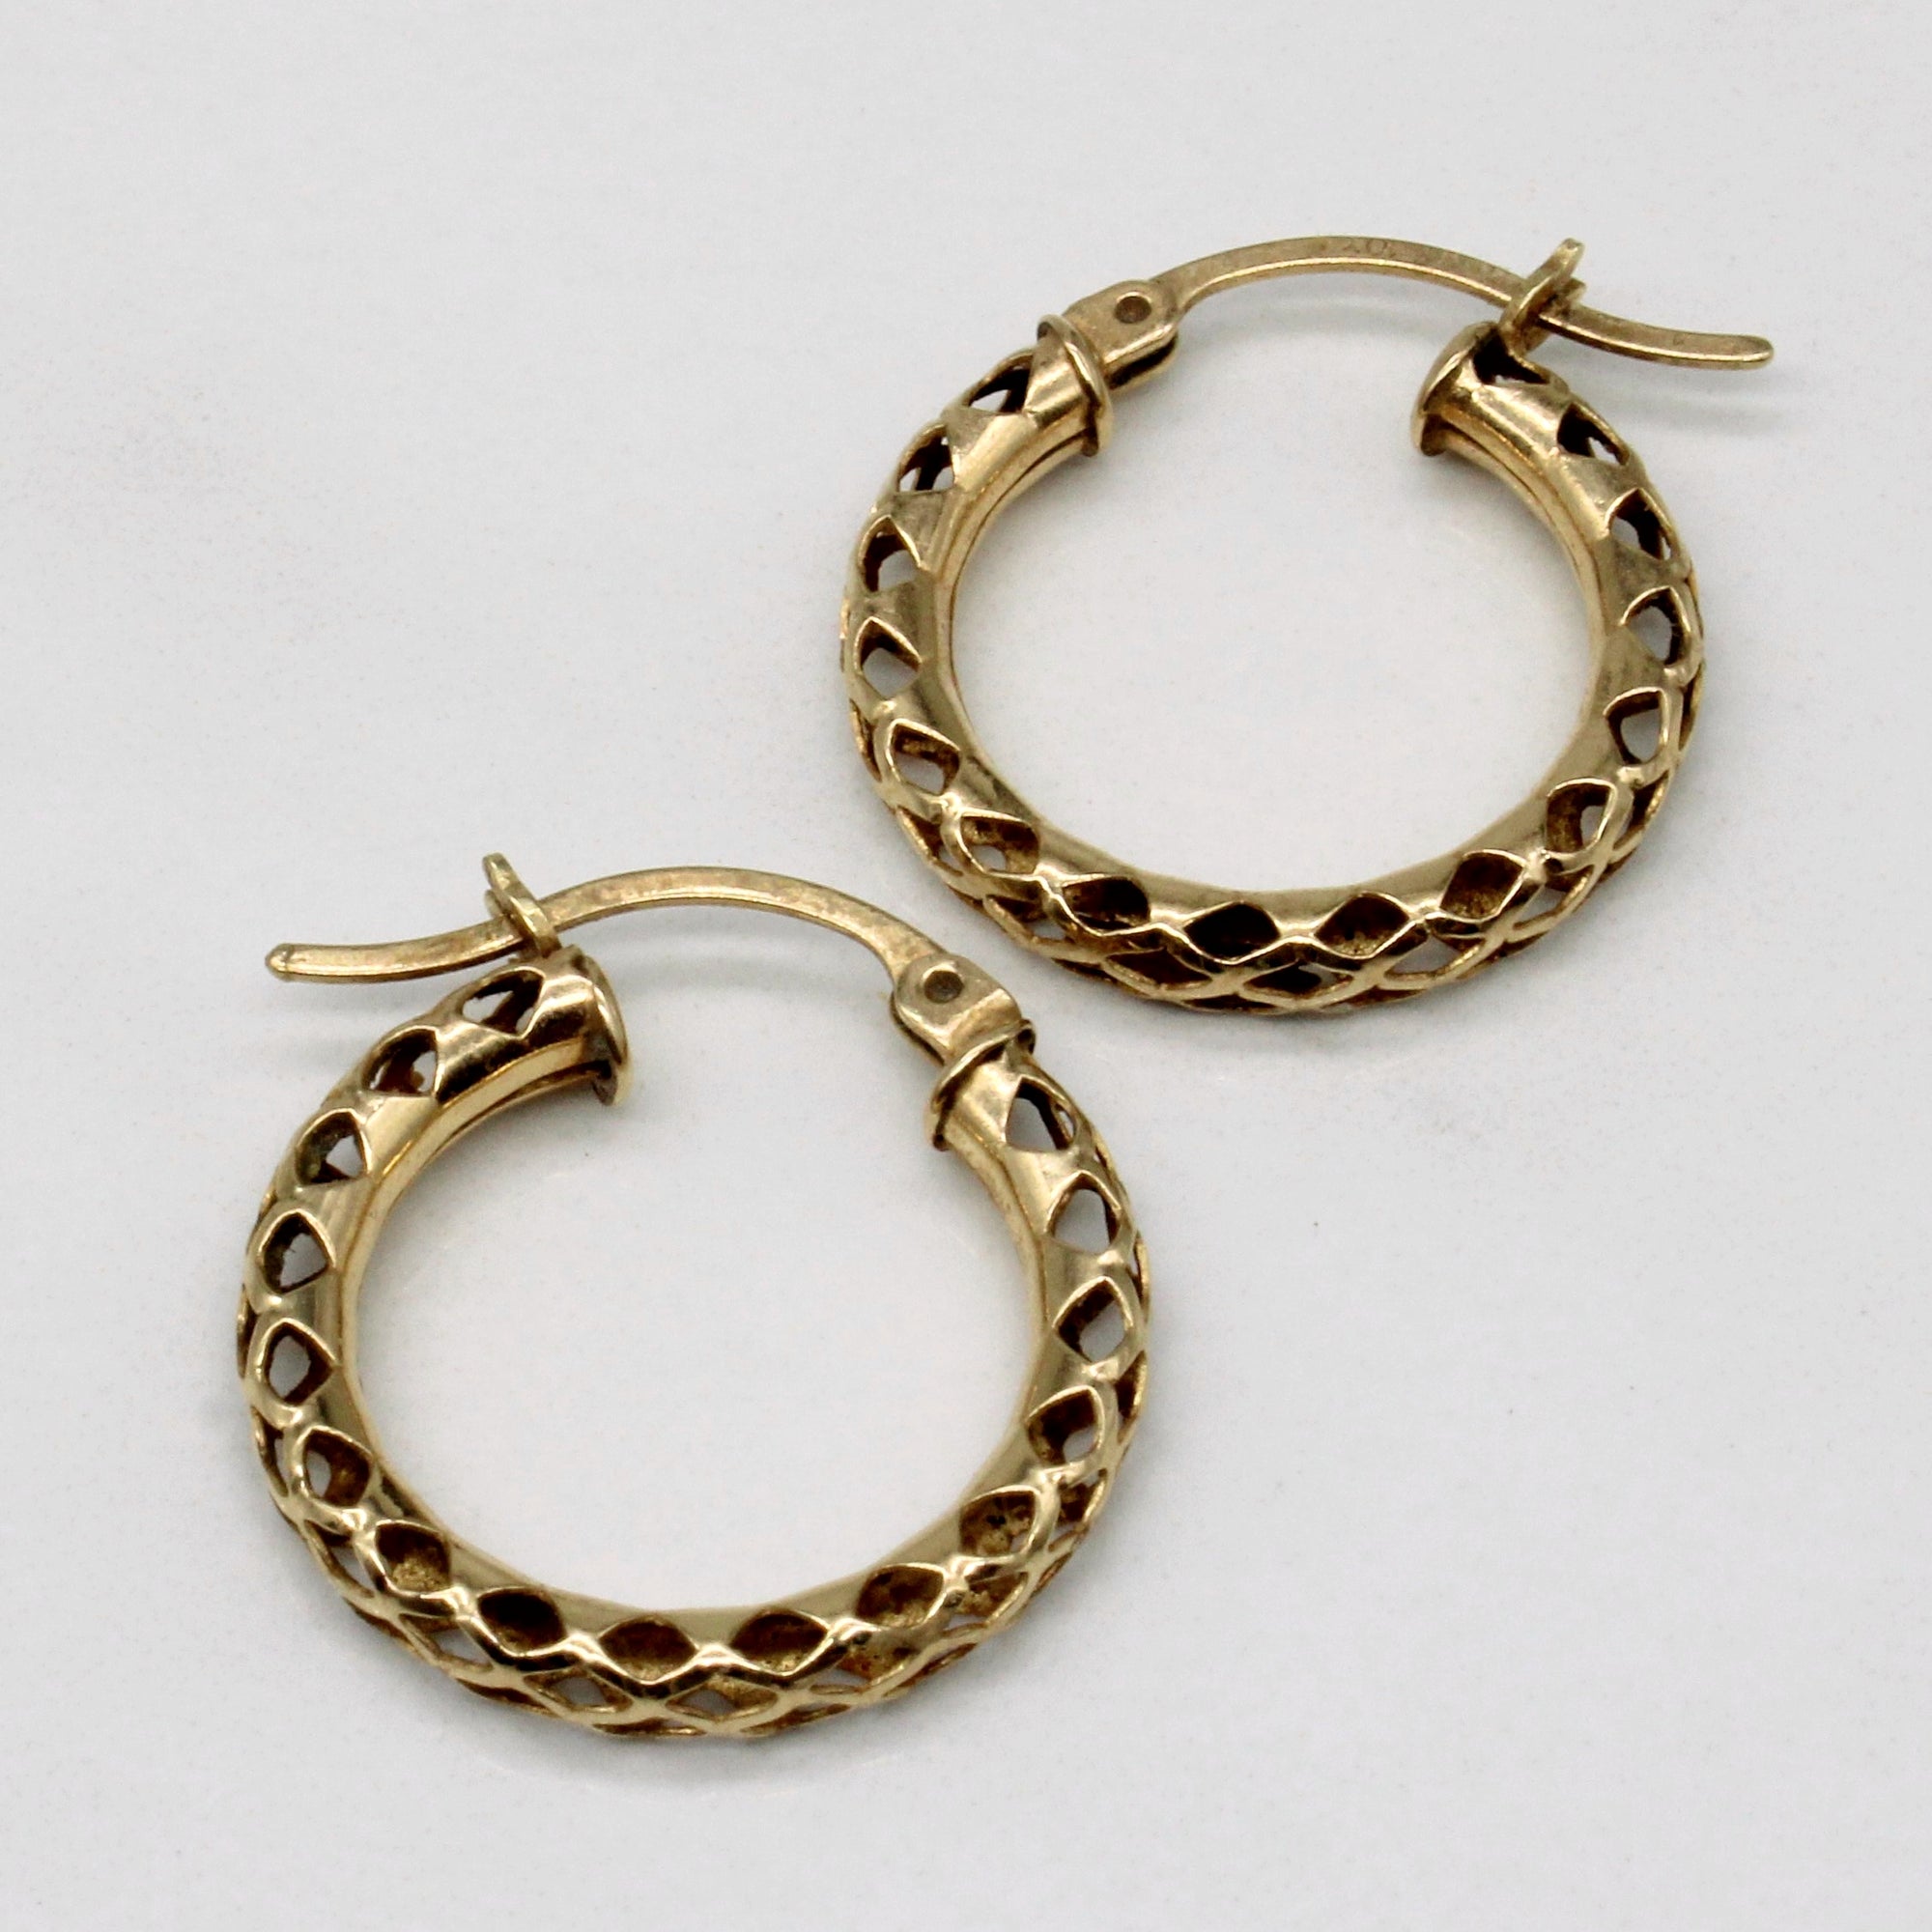 10k Yellow Gold Lattice Hoop Earrings